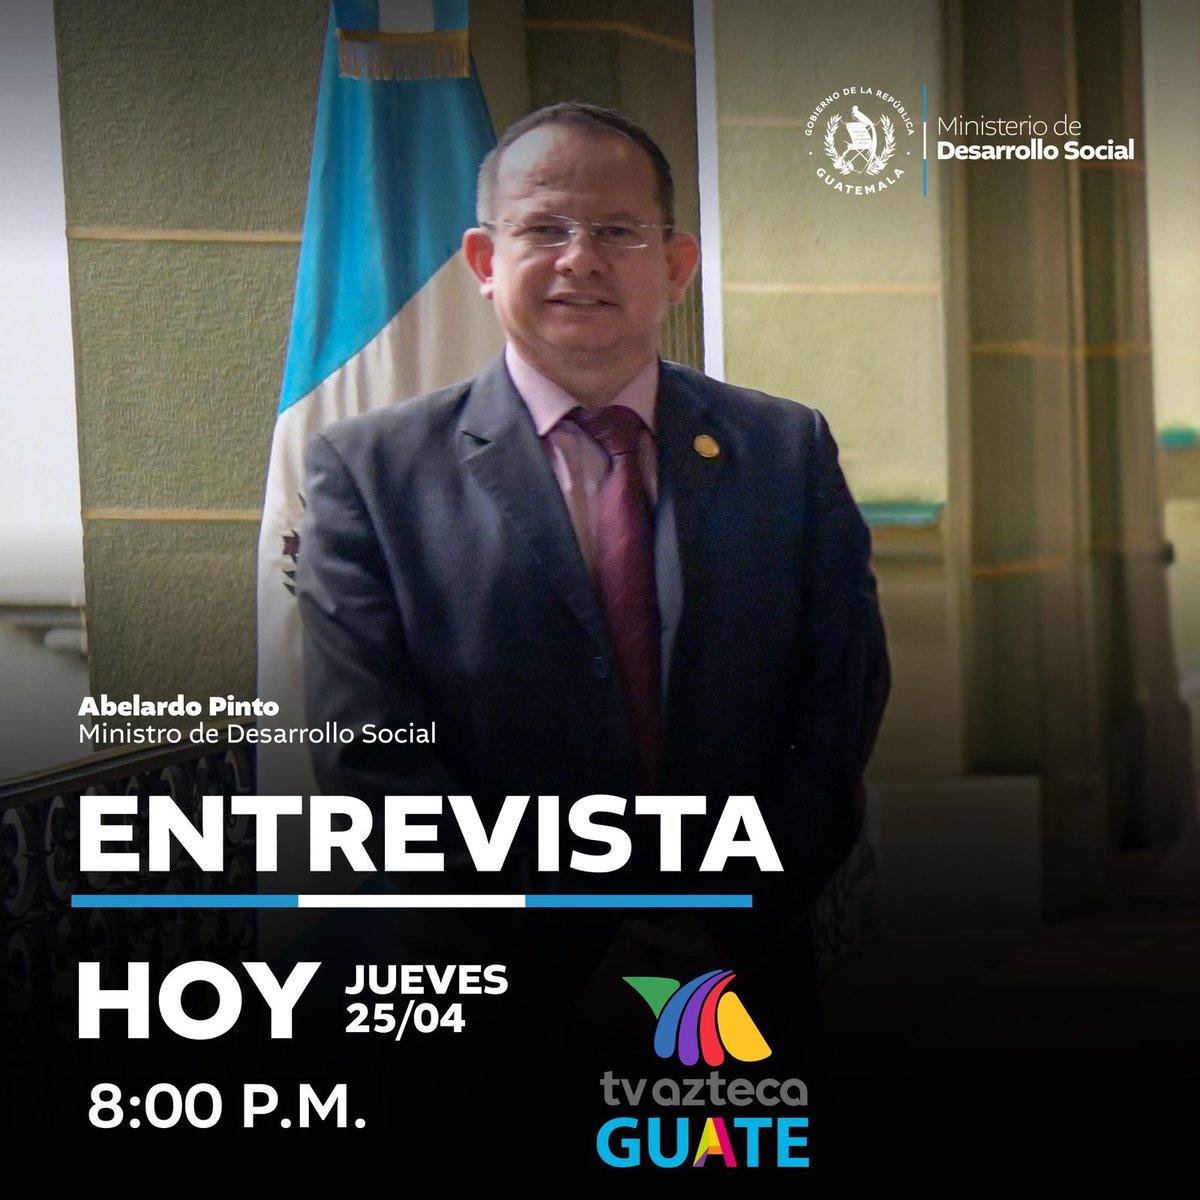 El ministro del @midesgt, Abelardo Pinto, estará en entrevista para ampliar información de las denuncias que presentó sobre anomalías en la ejecución de proyectos de esta institución. 💬 📺 Sintonízala hoy a las 8:00 PM por @AztecaGuate.